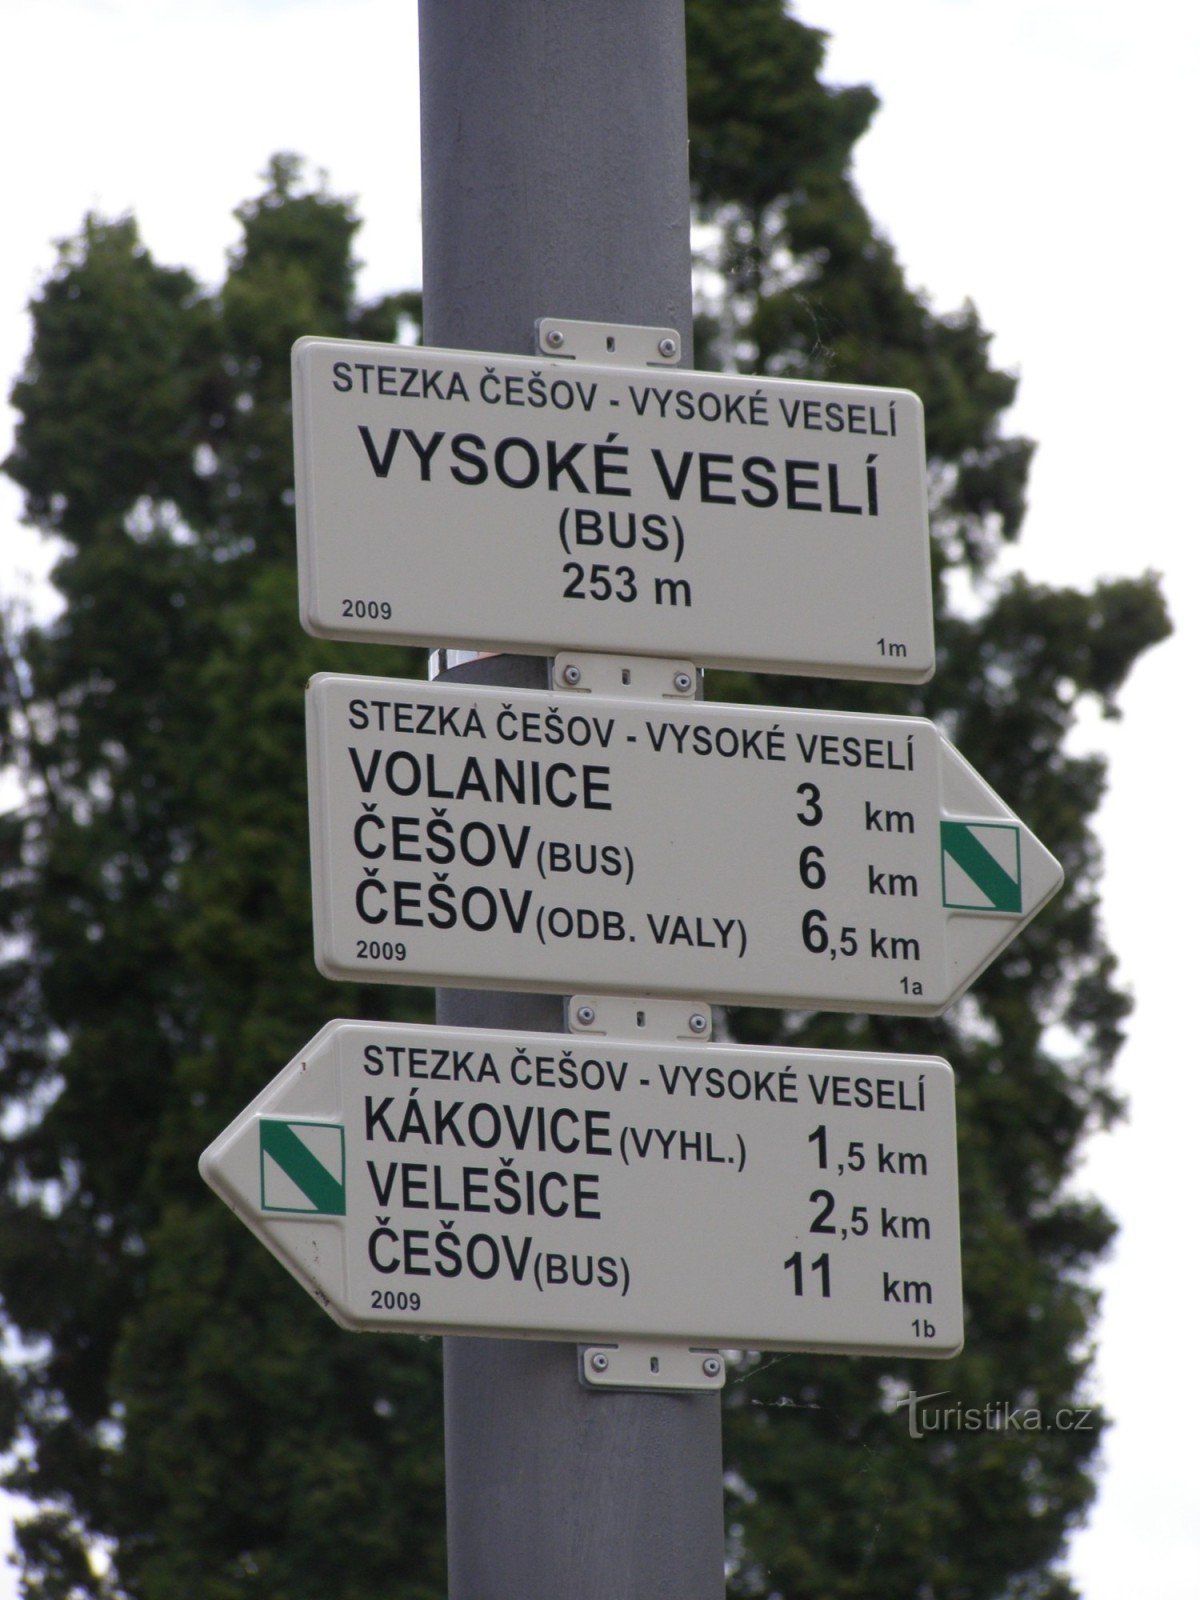 διέλευση NS Češov-Vysoké Veselí - Vysoké Veselí λεωφορείο